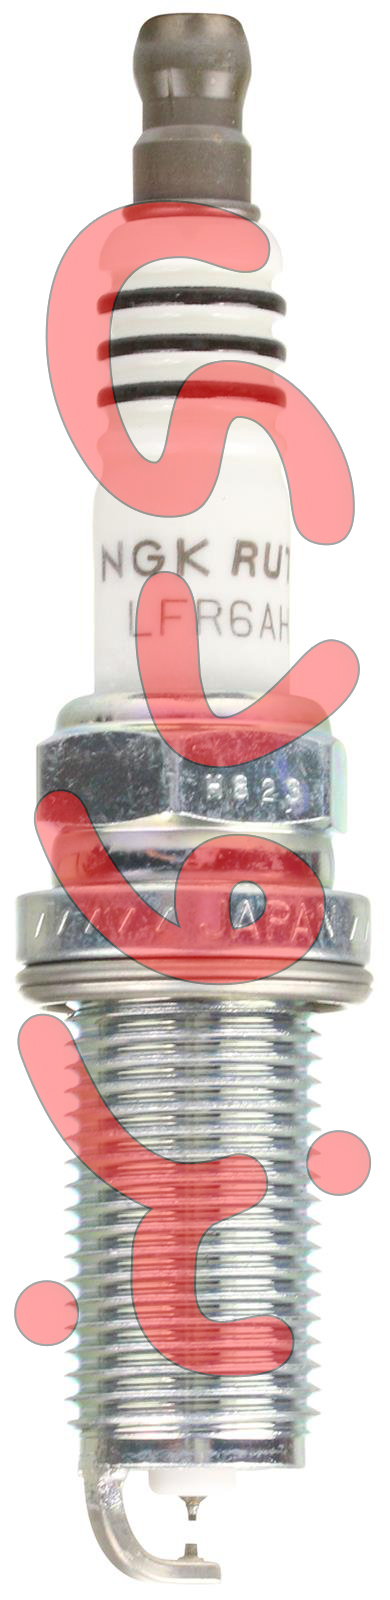 شمع انجیکا 94122 NGK روتینیوم اچ ایکس HX مدل LFR6AHX-S آچار 16 پایه بلند (قیمت به ازای یک عدد شمع)